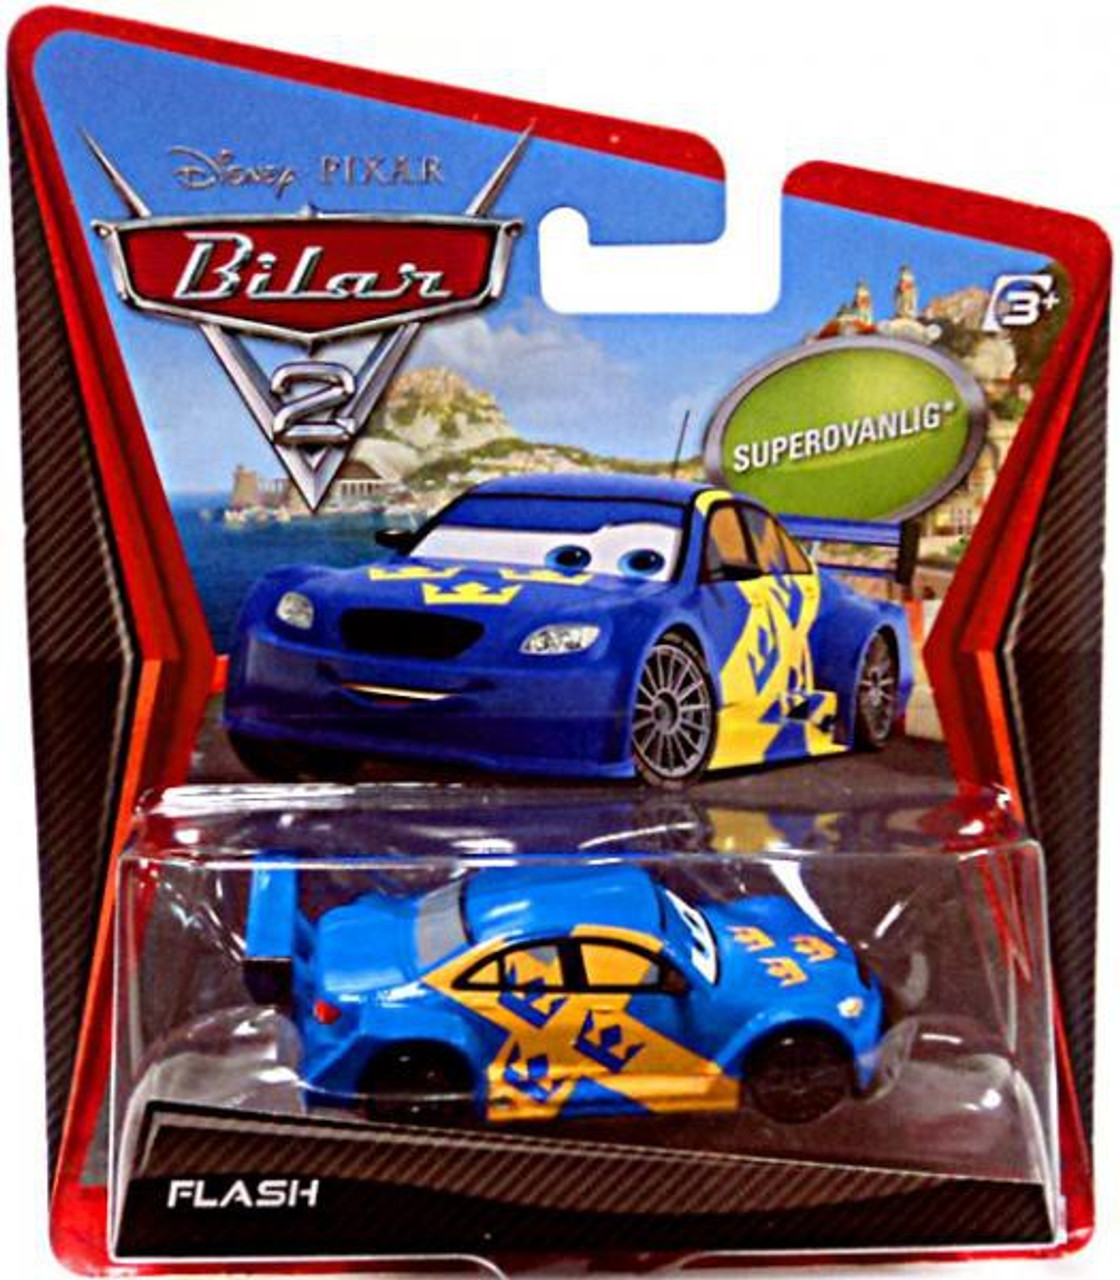 Disney Pixar Cars Cars 2 Main Series Flash 155 Diecast Car ...